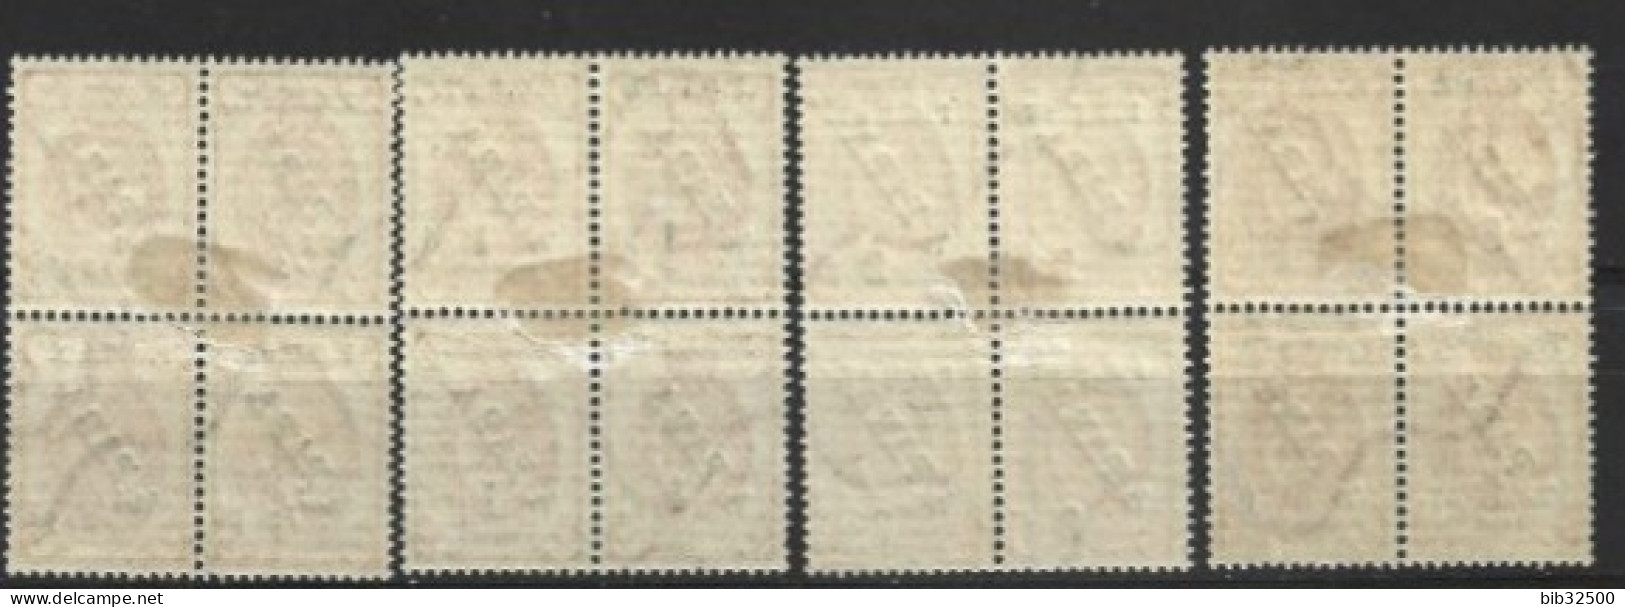 1919 - Timbres De 1900-10- Avec Surcharge G Et Nouvelle Valeur  - 4 Blocs De 4 - Non émis - - Levant